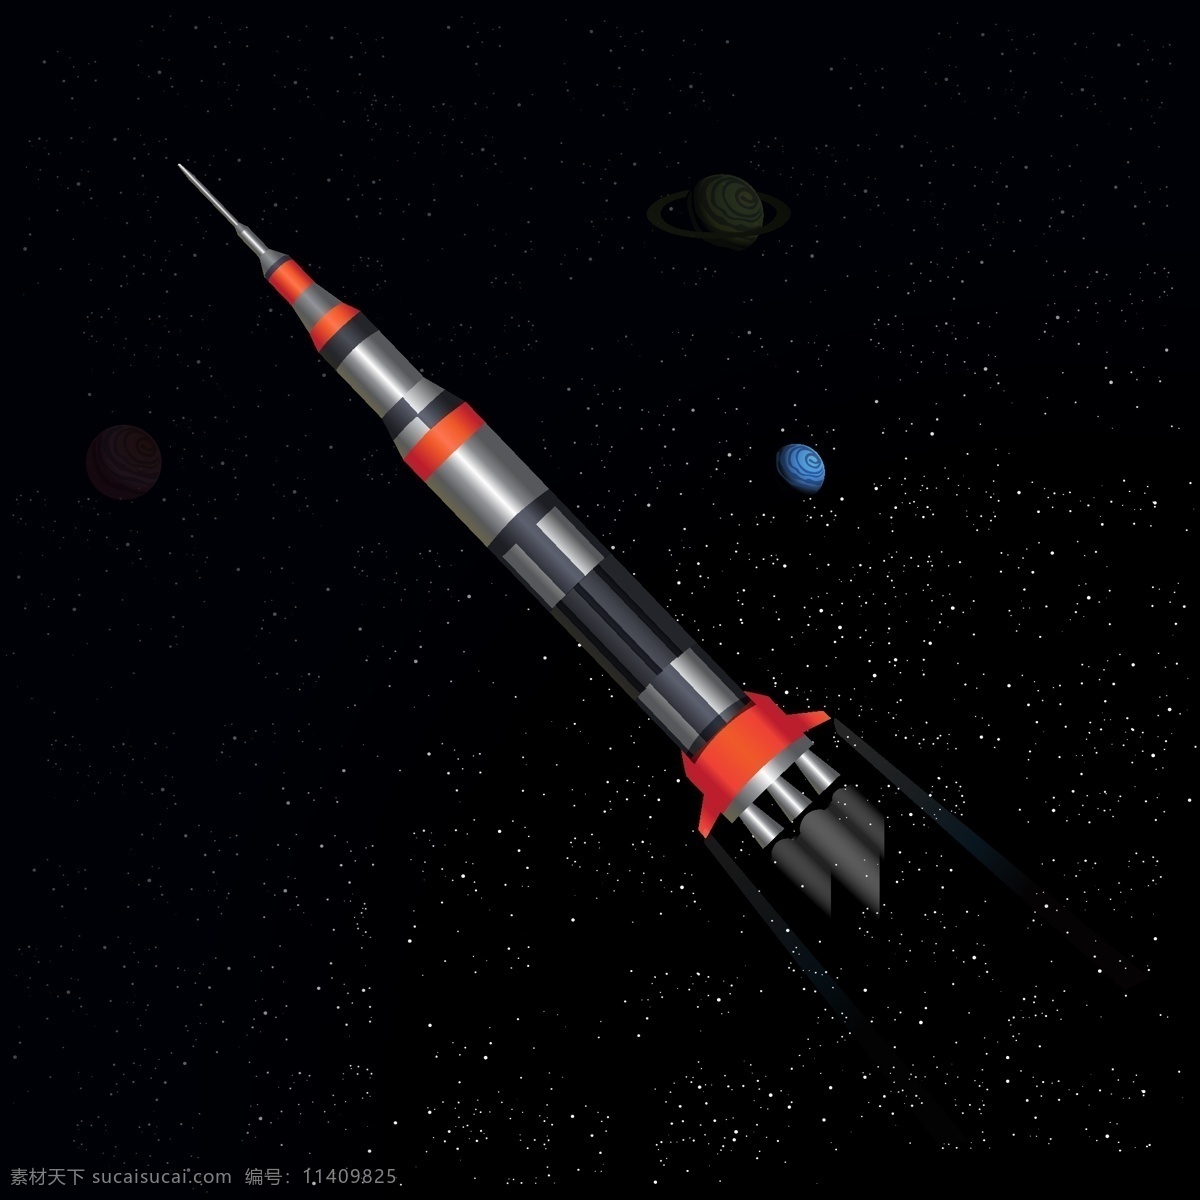 火箭在太空 科技背景素材 广告设计模板 ai素材 科技宣传海报 火箭素材 展板 科技 火箭 太空 黑色 未来